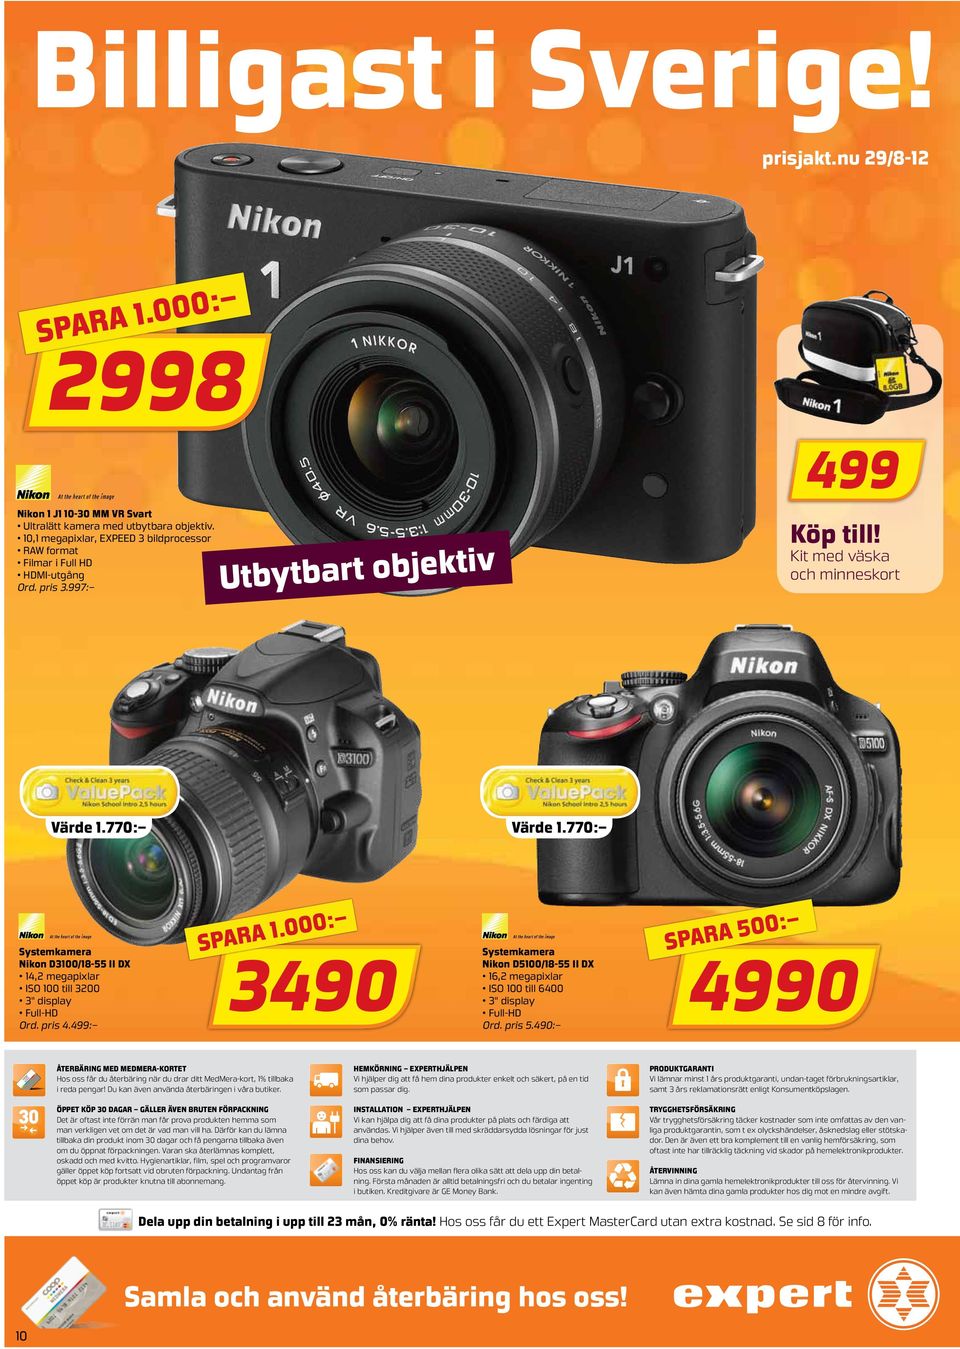 770: Systemkamera Nikon D3100/18-55 II DX 14,2 megapixlar ISO 100 till 3200 3" display Full-HD Ord. pris 4.499: spara 1.